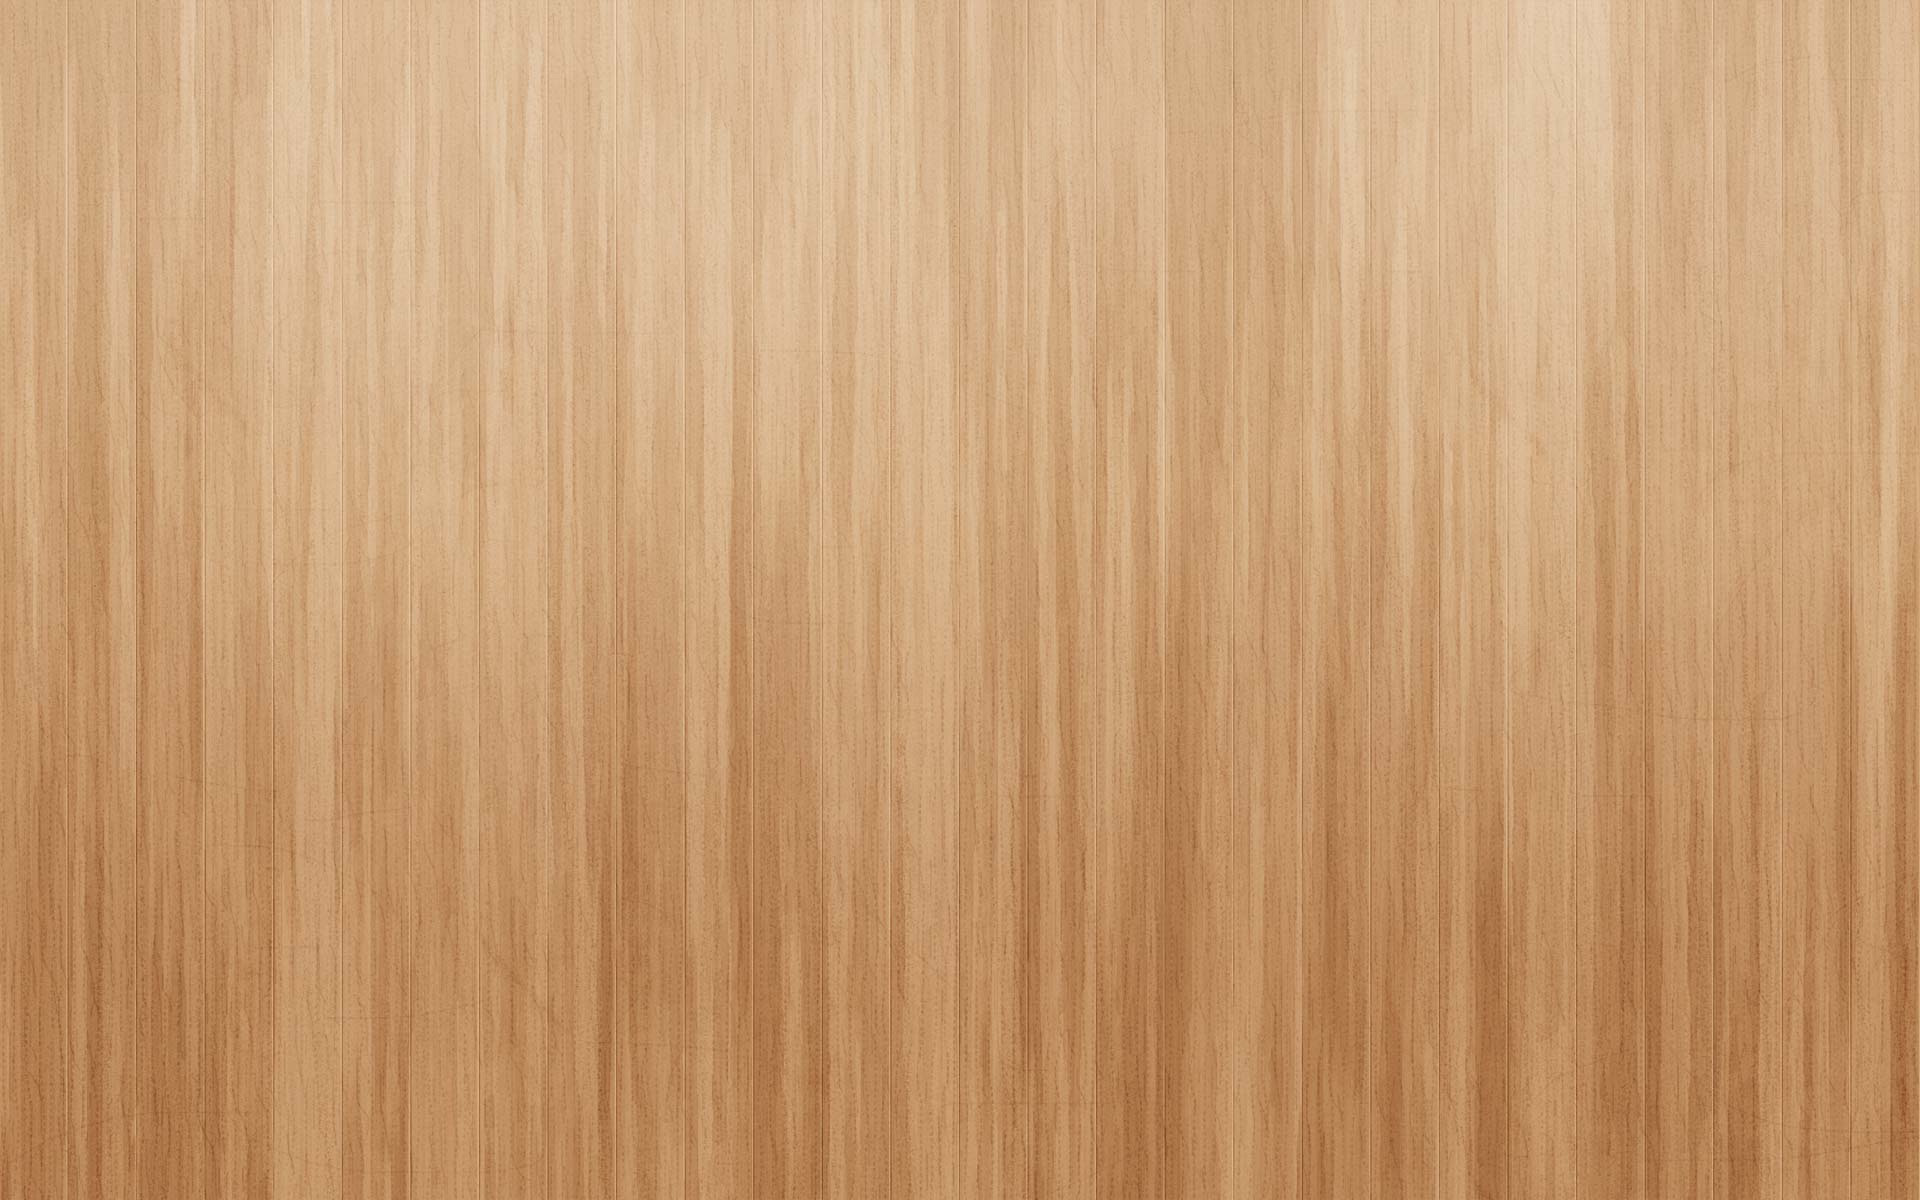 Vải gỗ nhẹ là một trong những lựa chọn được yêu thích nhất hiện nay để trang trí cho không gian sống. Hình ảnh mà chúng tôi mang lại sẽ khiến bạn phải nể phục sự mềm mại và trang nhã của vải gỗ nhẹ.